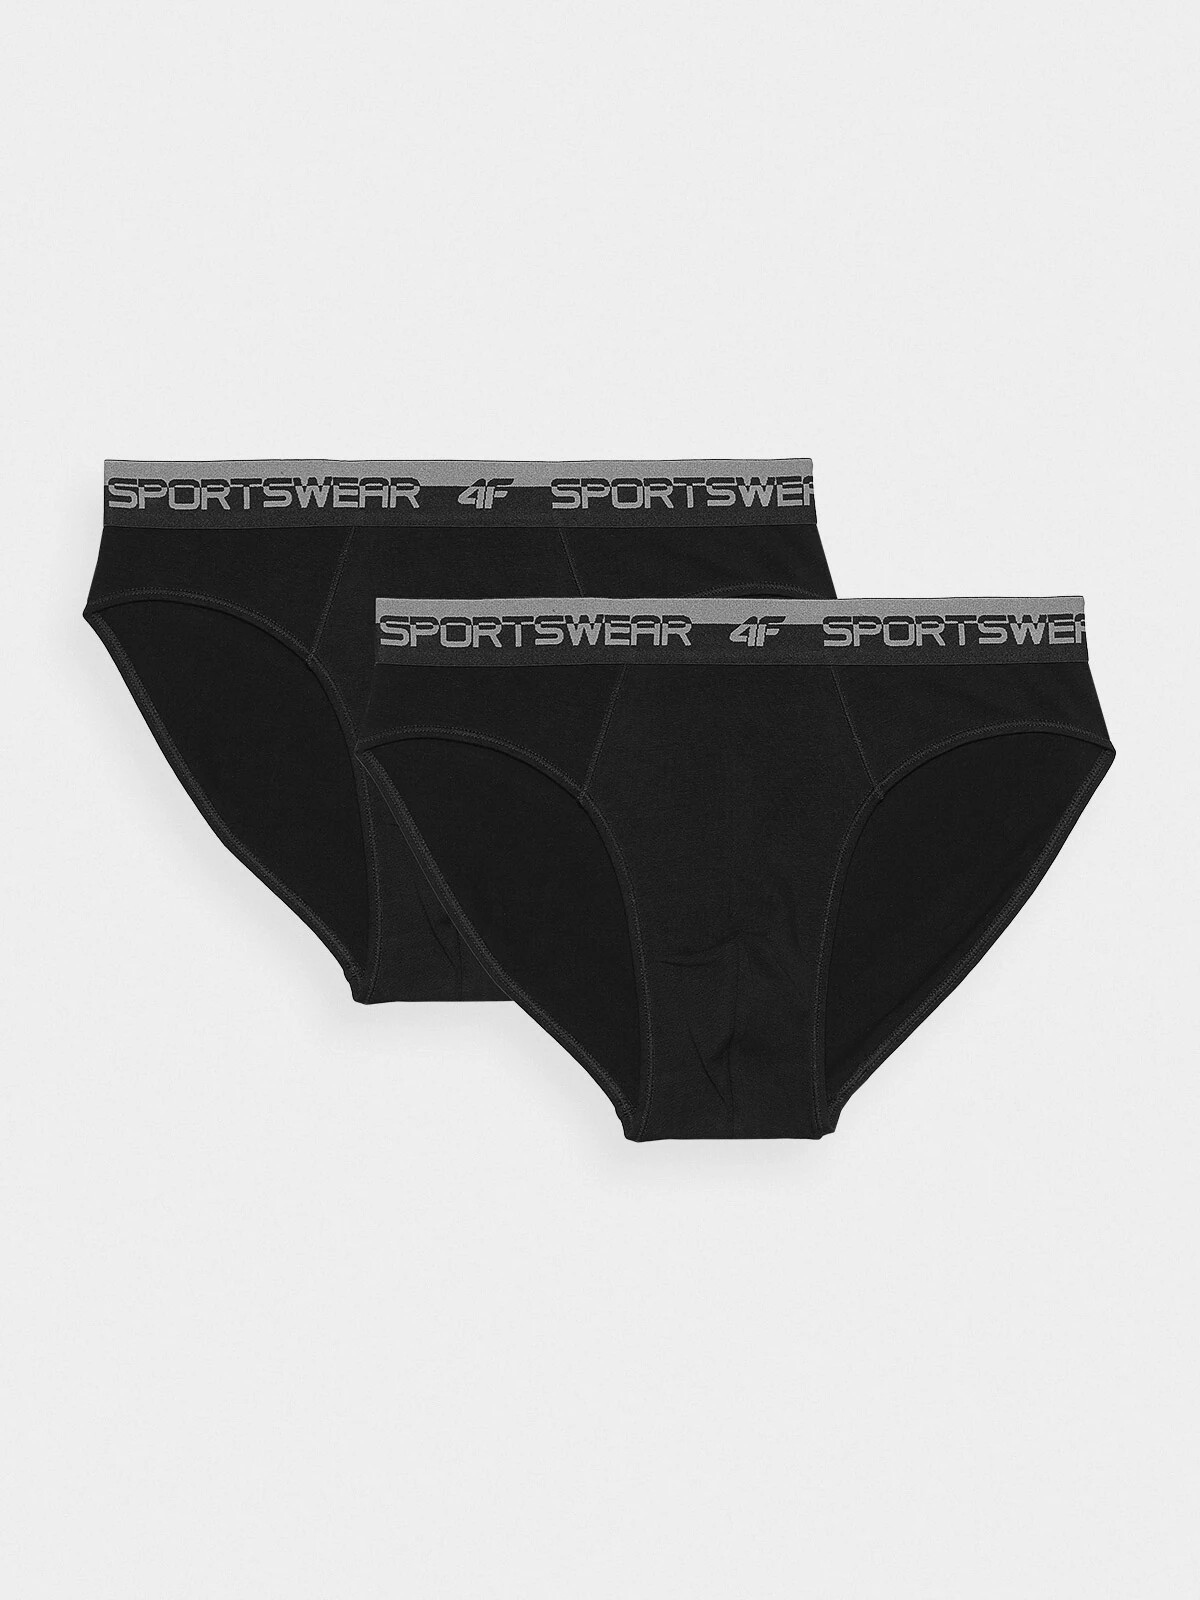 Men's Underwear Briefs 4F (2-pack) - Black